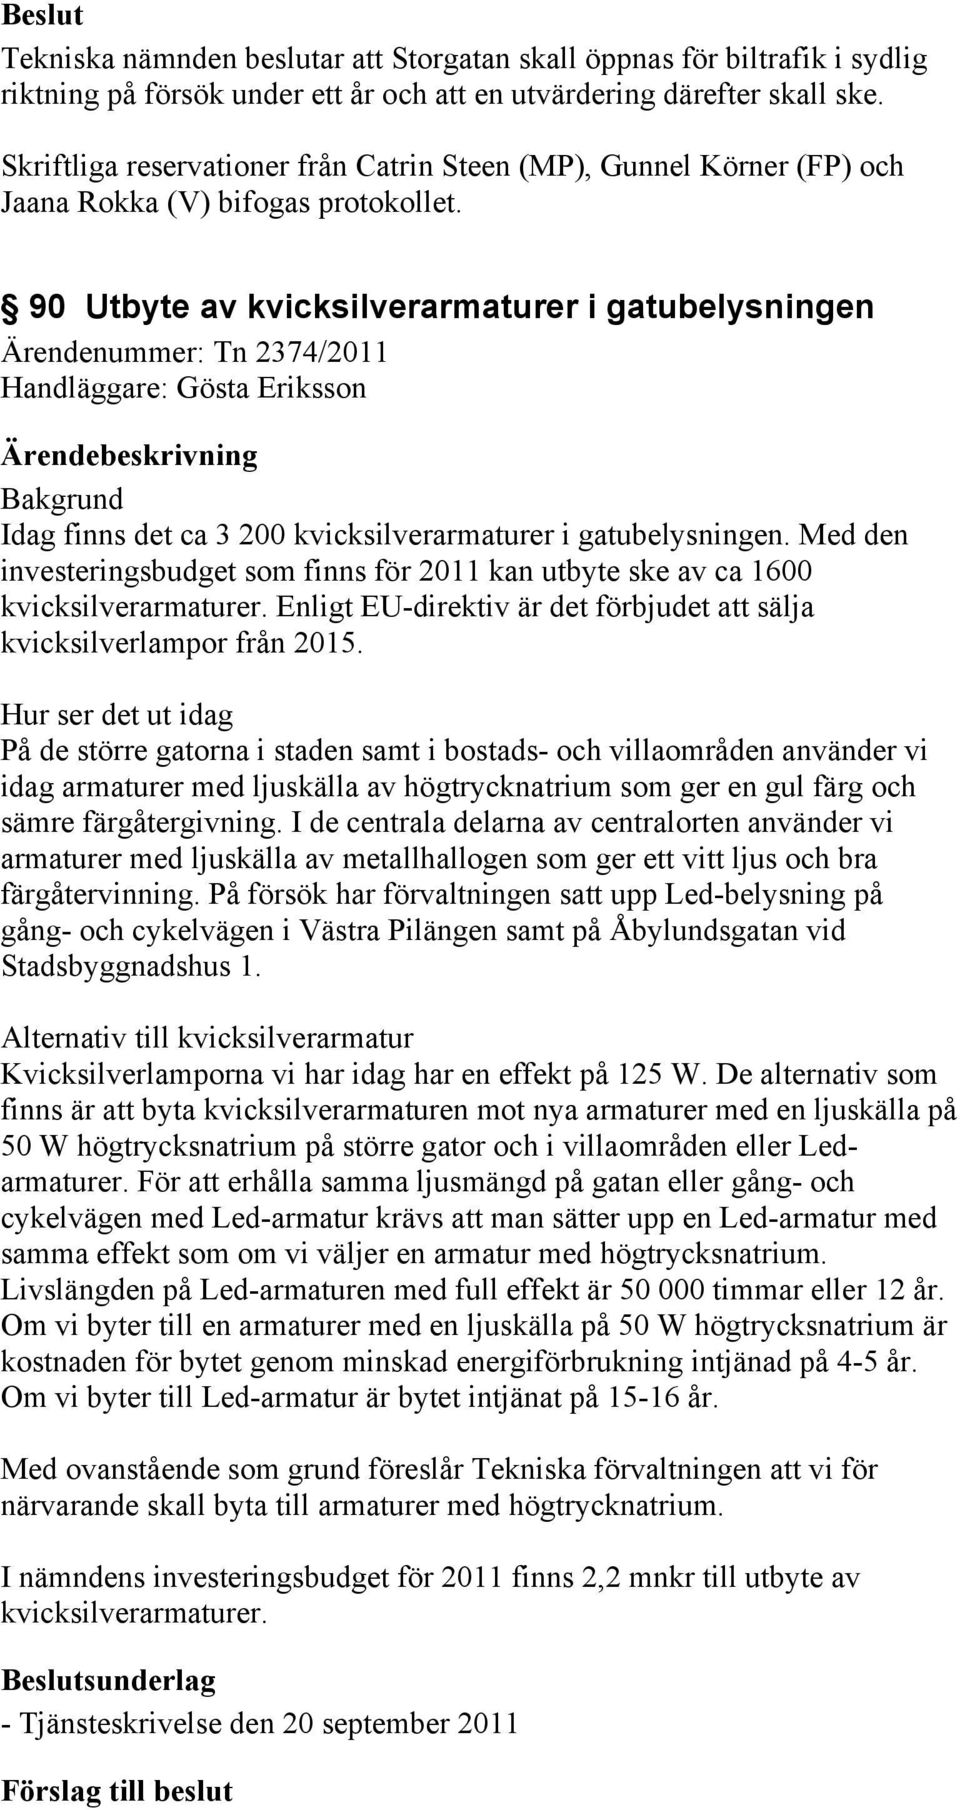 90 Utbyte av kvicksilverarmaturer i gatubelysningen Ärendenummer: Tn 2374/2011 Handläggare: Gösta Eriksson Bakgrund Idag finns det ca 3 200 kvicksilverarmaturer i gatubelysningen.